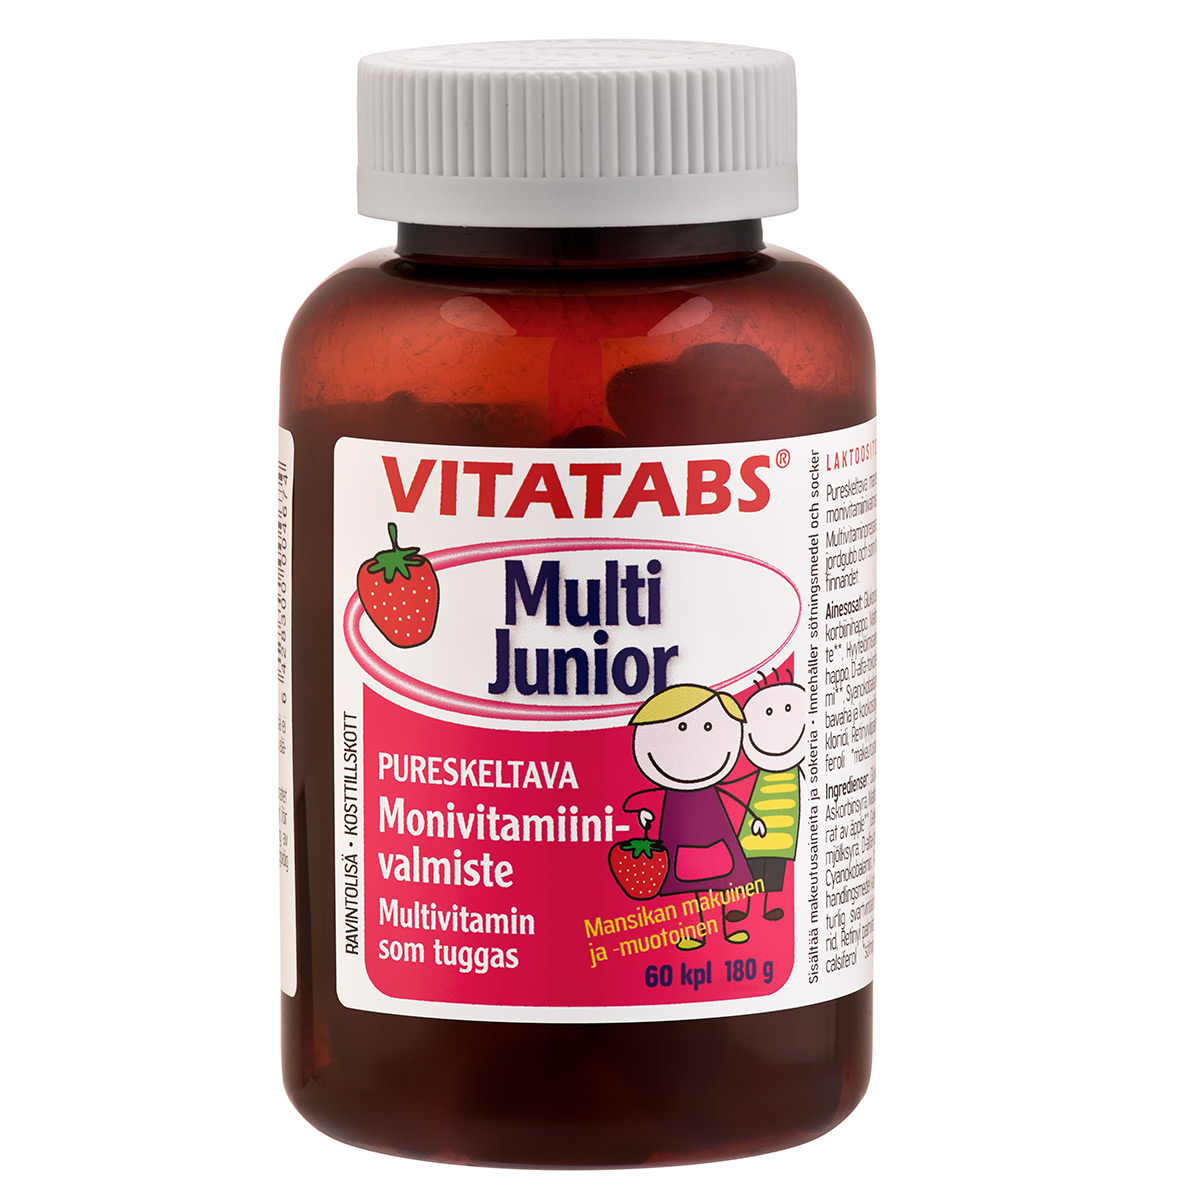 Vitatabs Multi Junior 60 pcs/180g